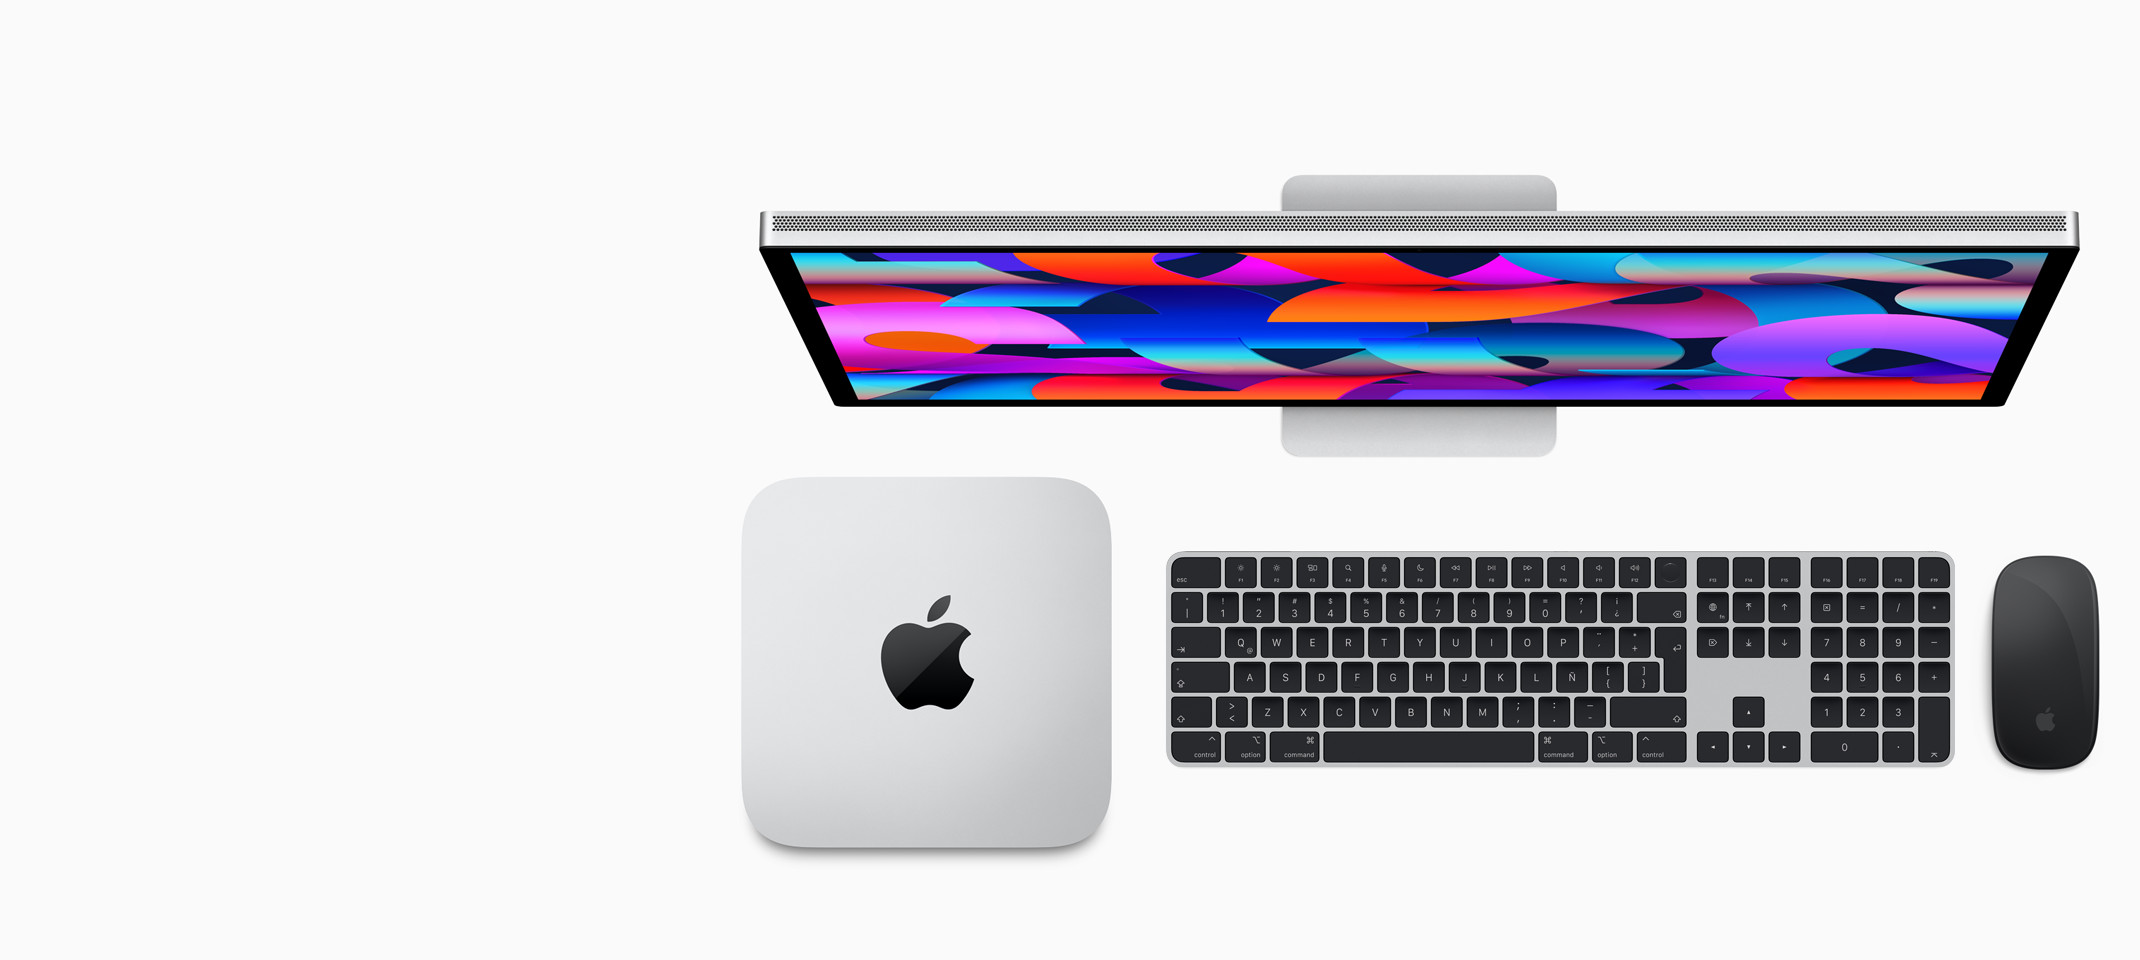 Studio Display, Mac Studio, Magic Keyboard con Touch ID y teclado numérico, y Magic Mouse